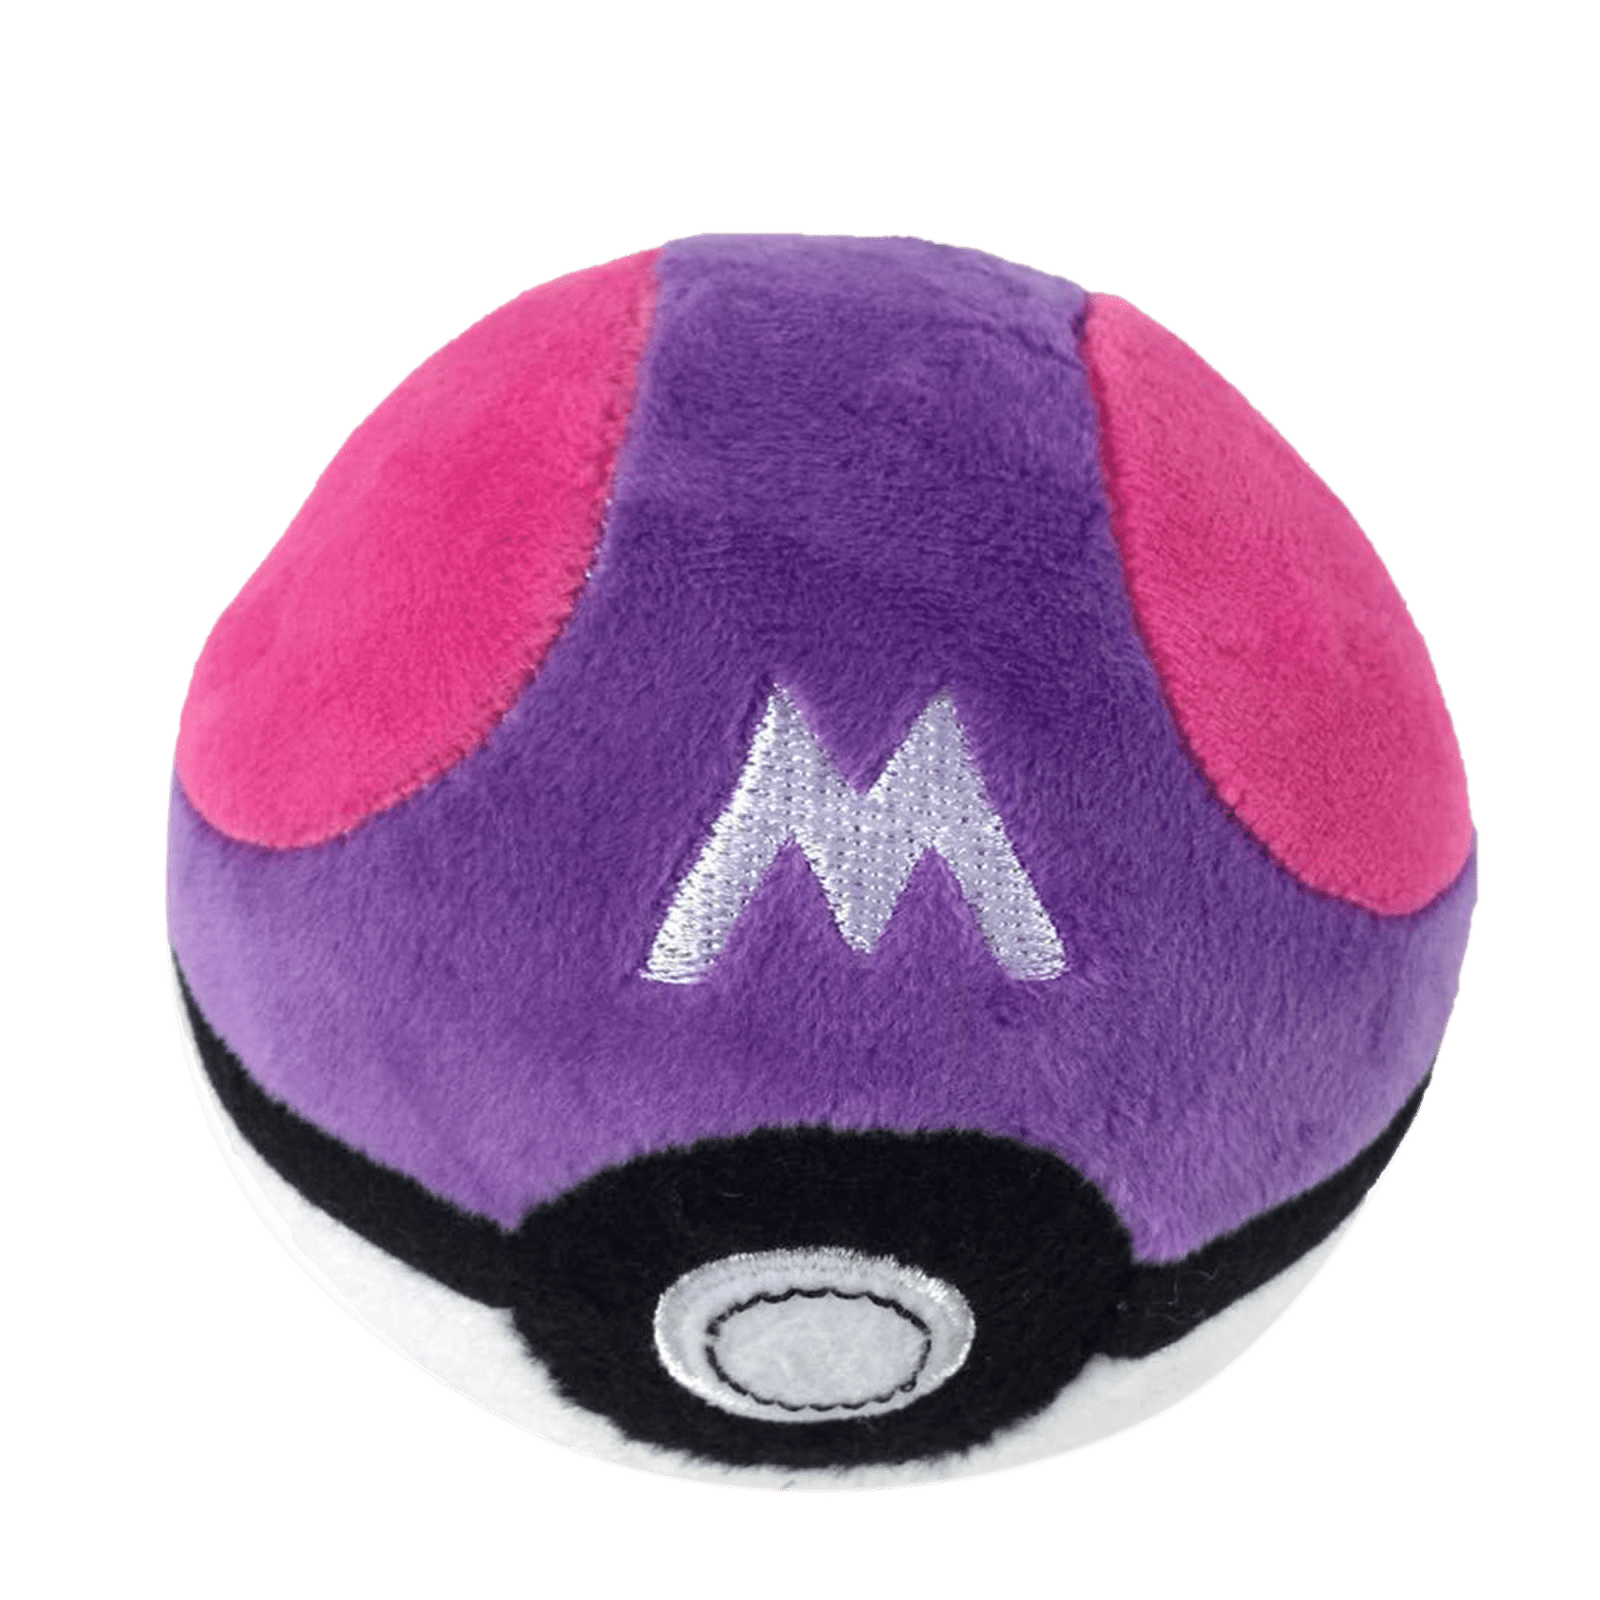 SeekFunning Pokemon 5" Pikachu Pokeball Poke Ball Plush Toy, Master ball